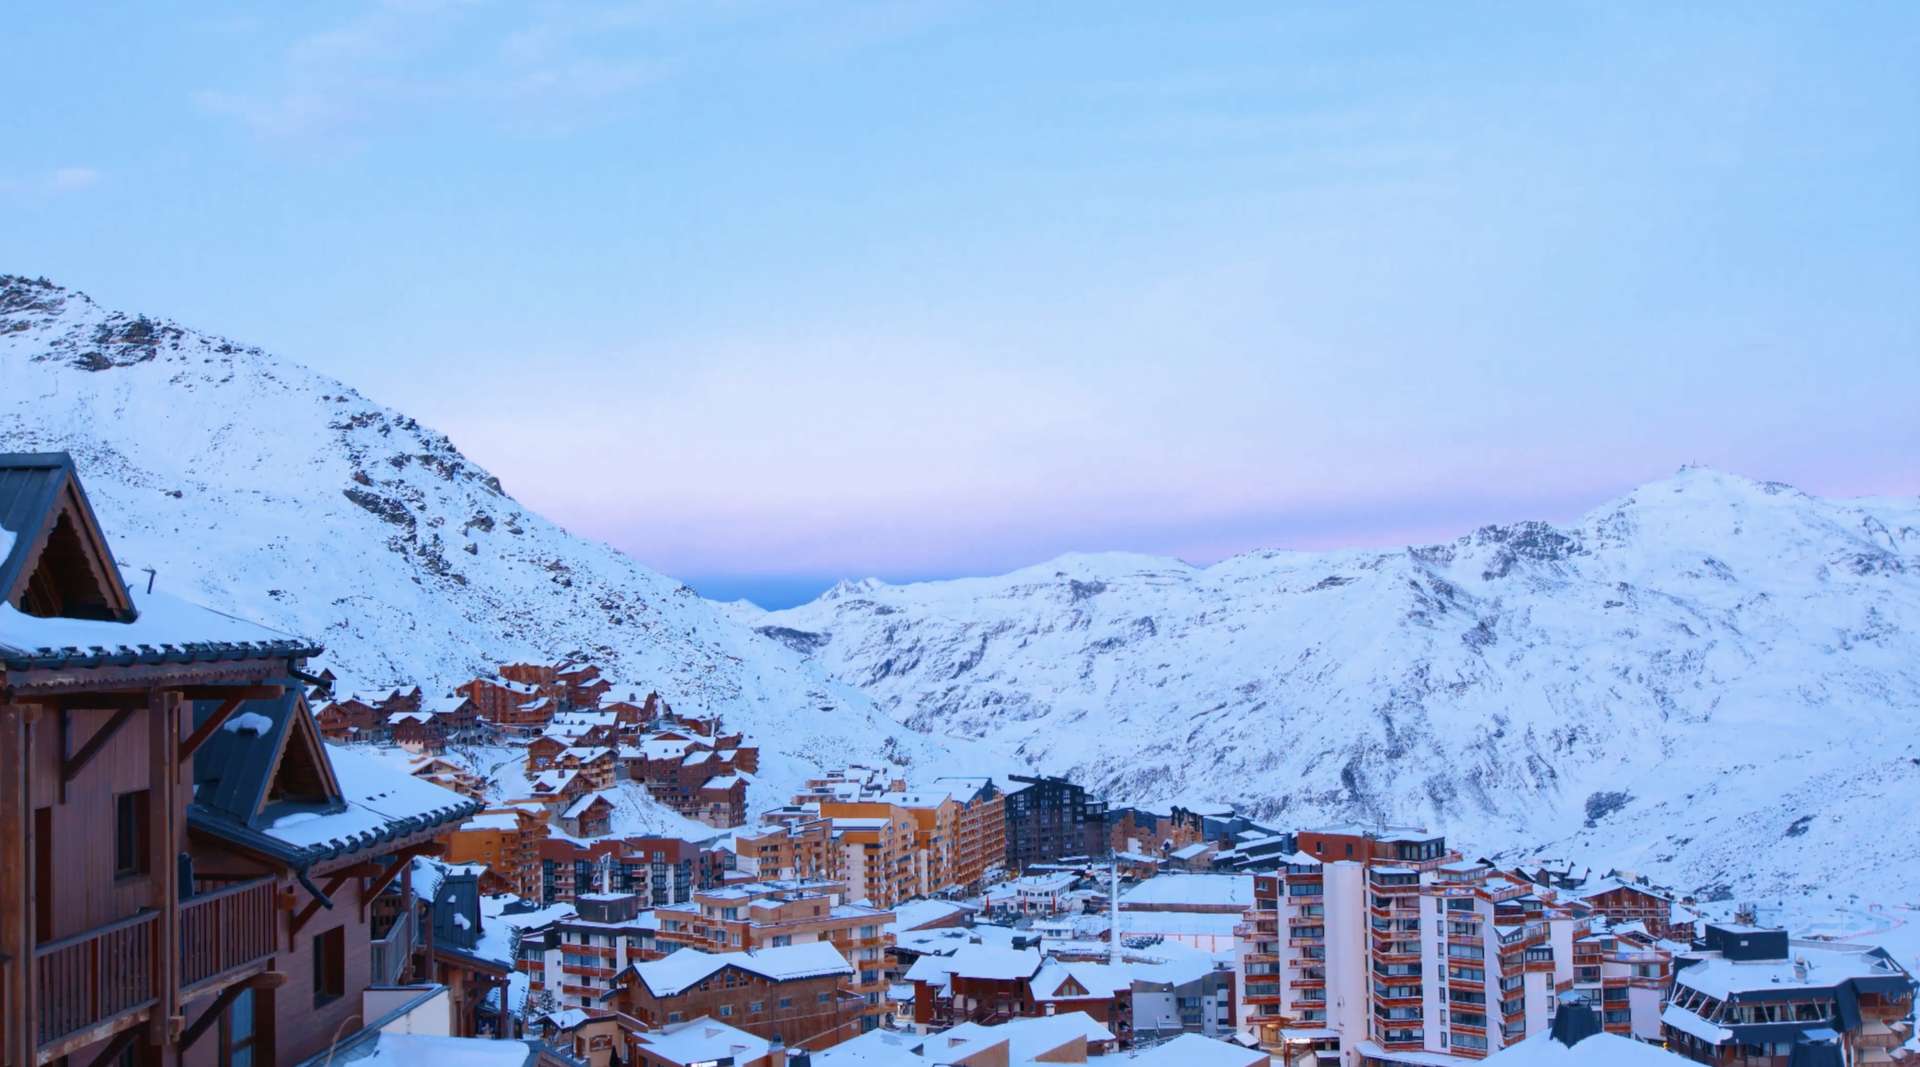 法国最著名滑雪场之一 val thorens 雪山延迟